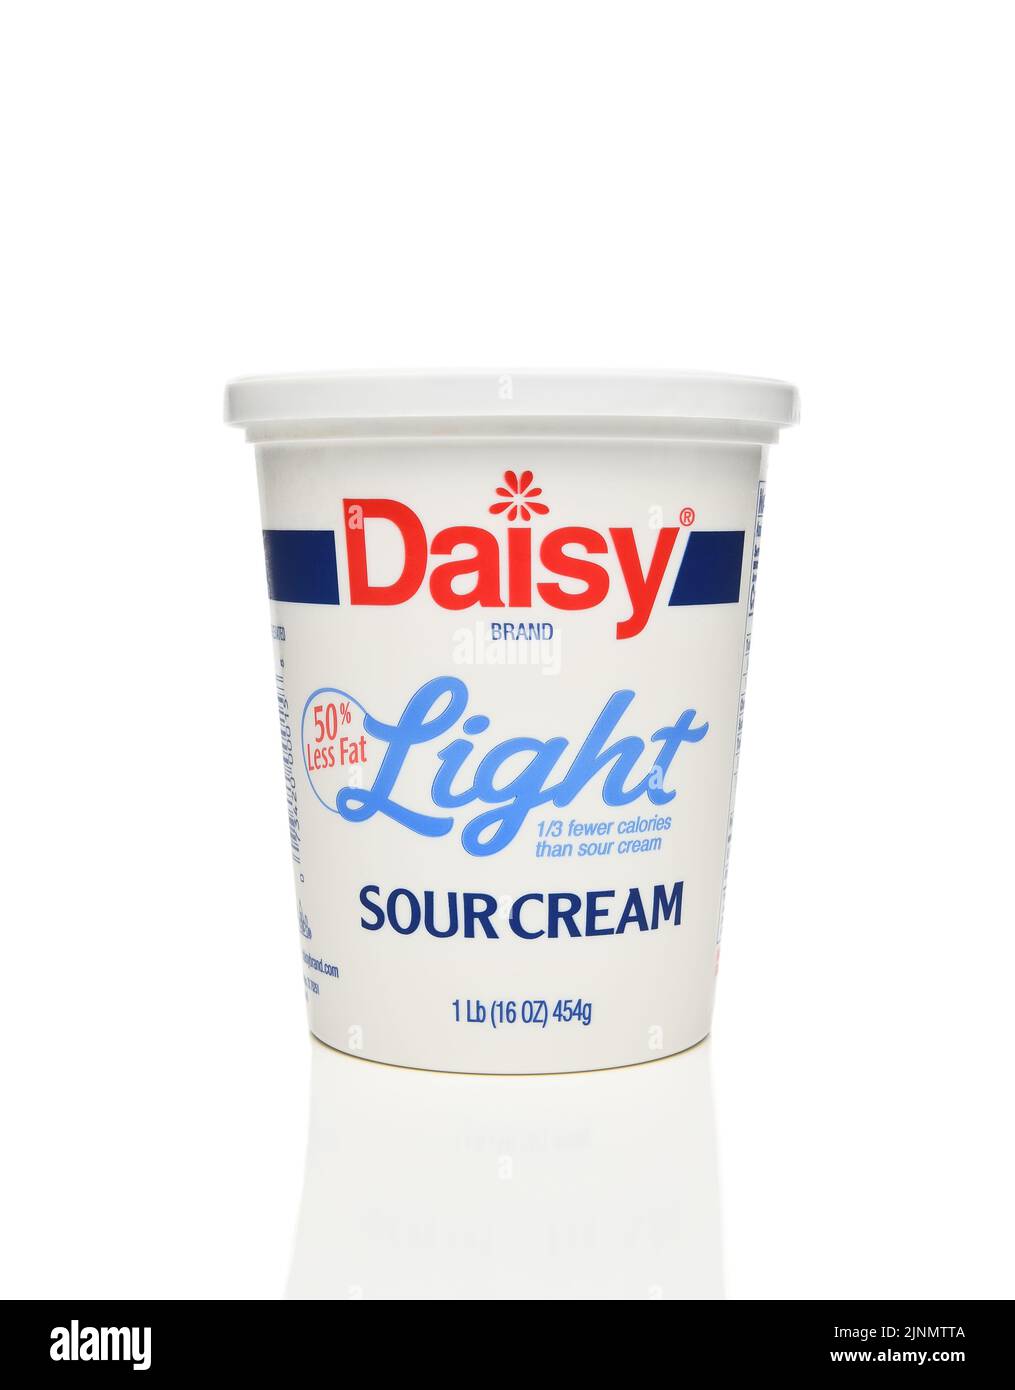 IRVINE, KALIFORNIEN - 12. AUGUST 2022: Ein Karton mit 16 Unzen Daisy Brand Light Sour Cream. Stockfoto